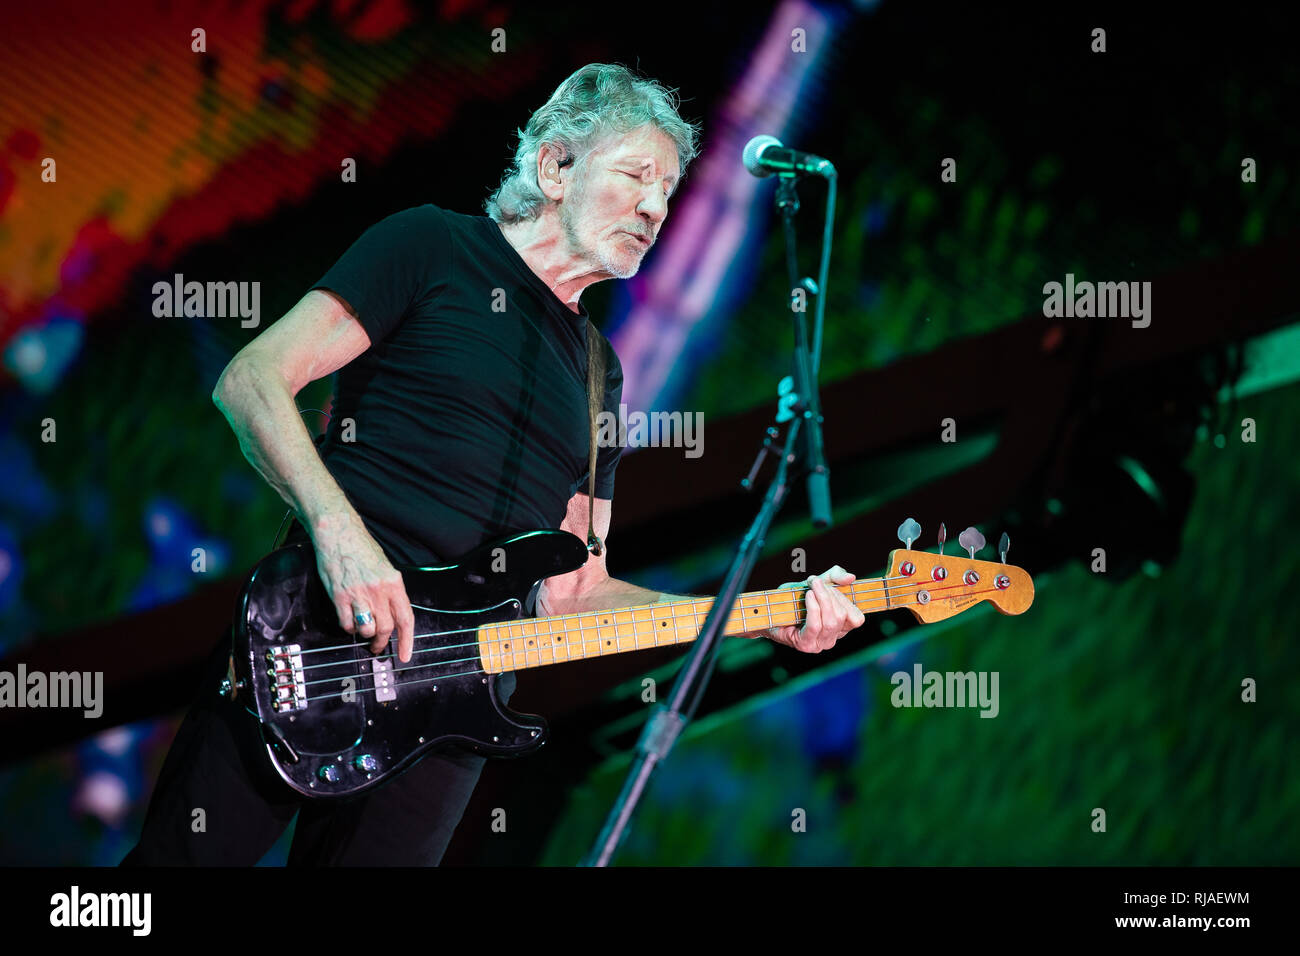 Lucca, Italia. 11 de julio de 2018. Italia, Lucca: cantante Roger Waters (Pink Floyd) realiza en vivo en el escenario en el Festival de Verano de Lucca 2018 para "Us + ellos" Tour 2018 Foto de stock